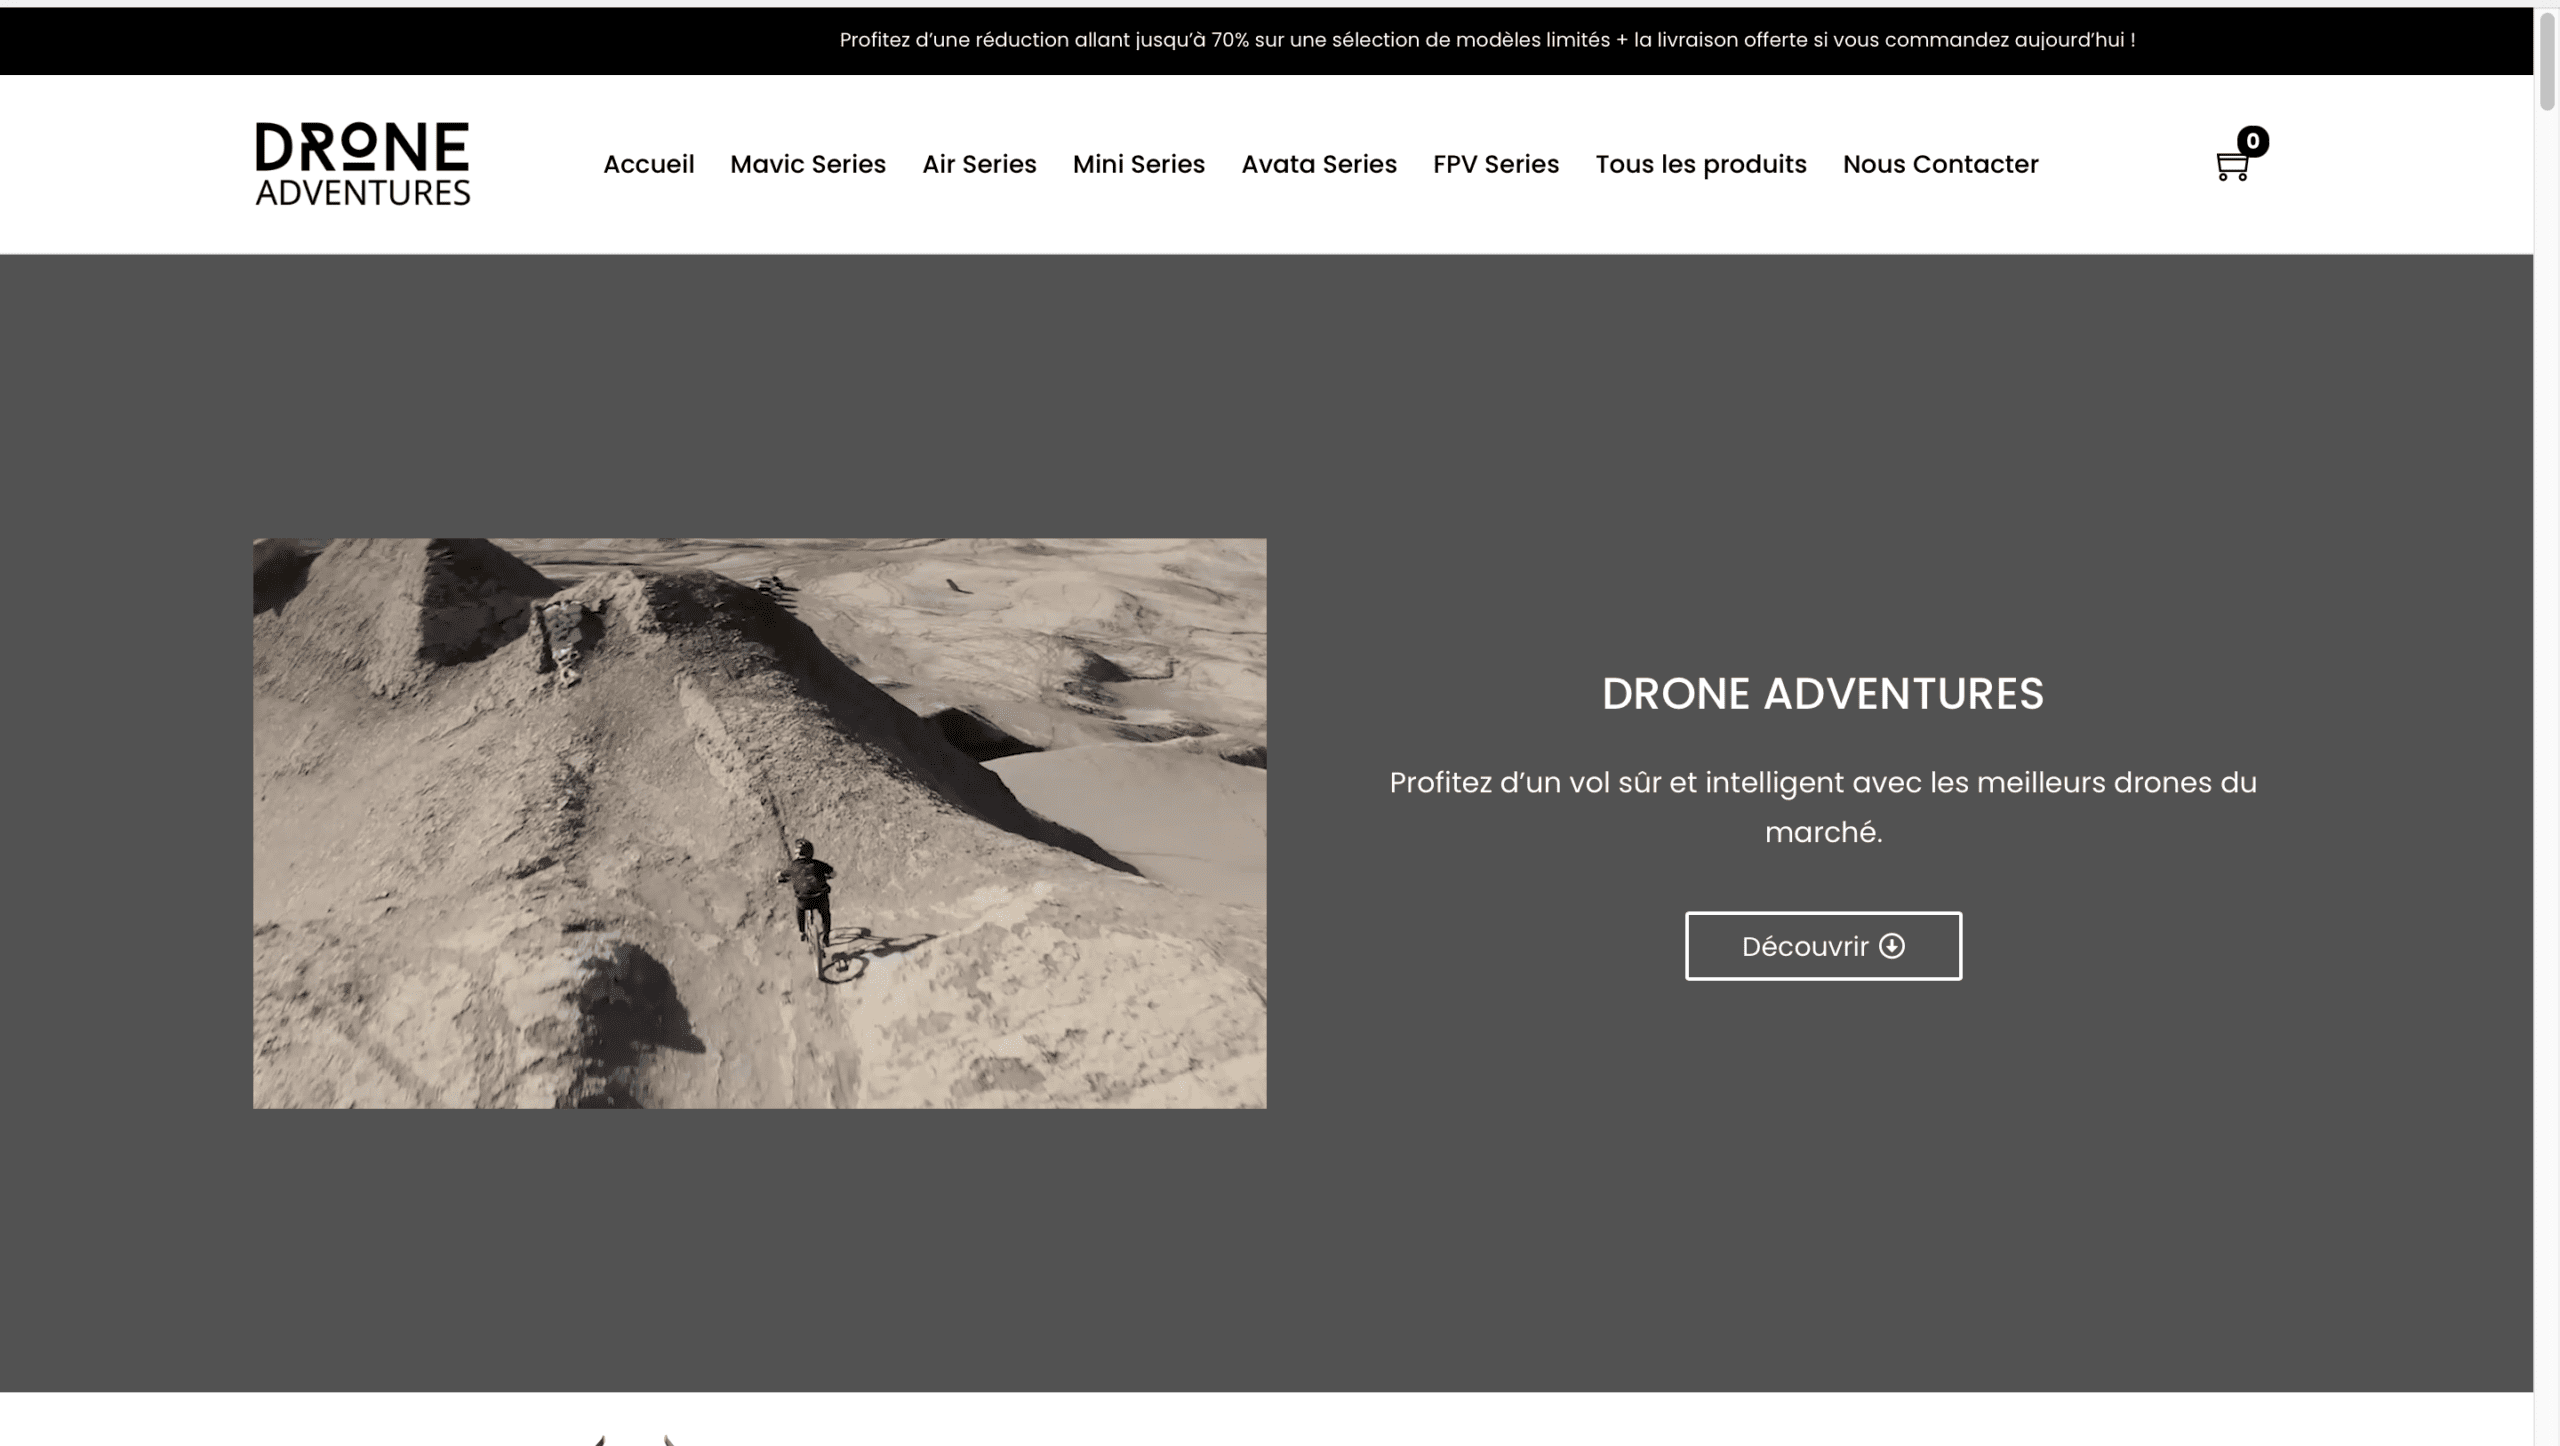 Drone_adventures-Home-hero